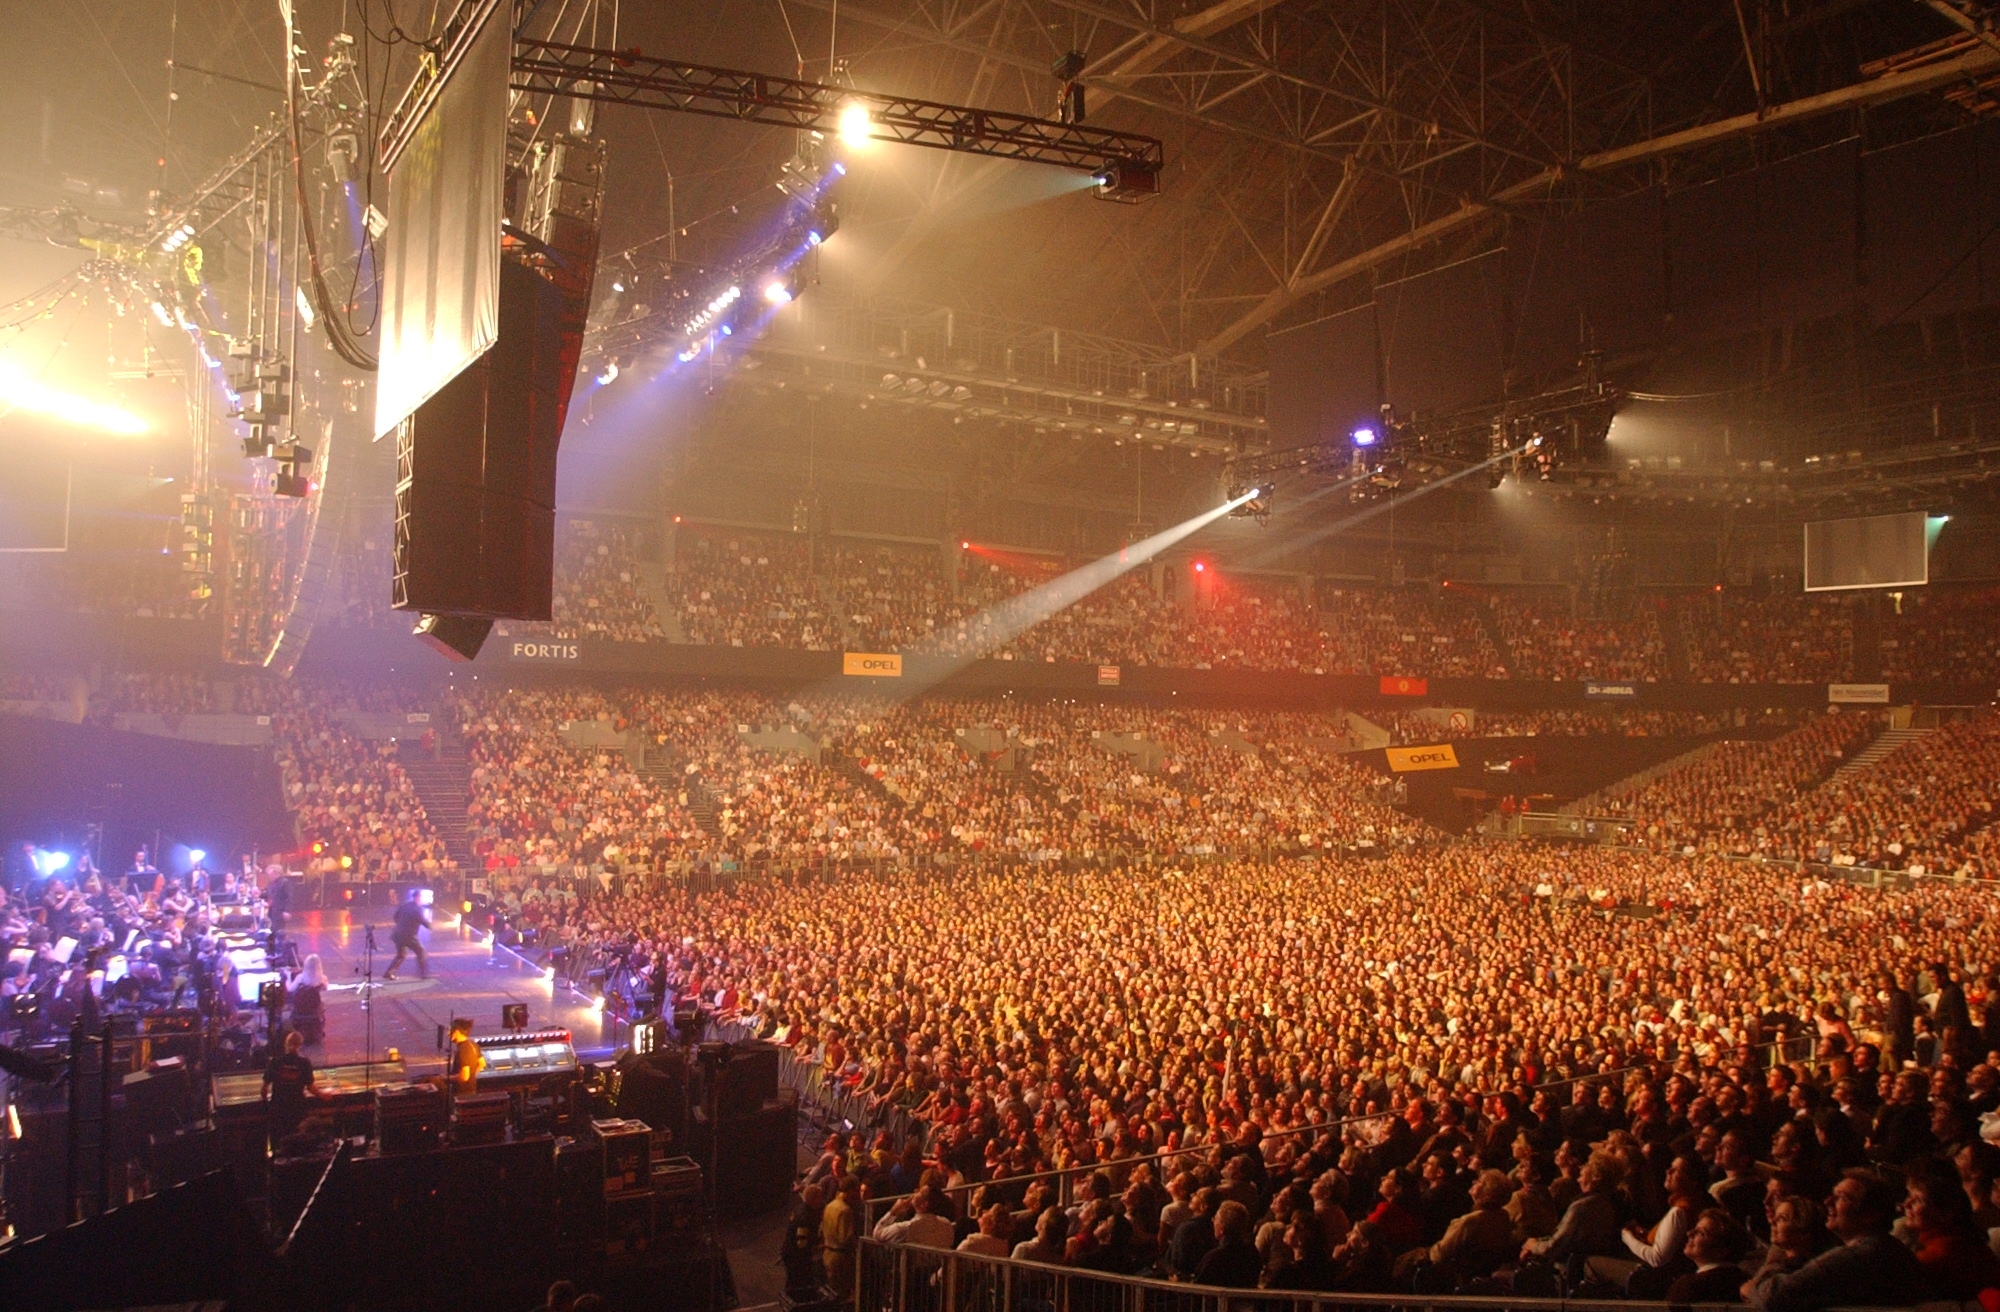 Belgian concert venues make the list of top 10 bestselling worldwide